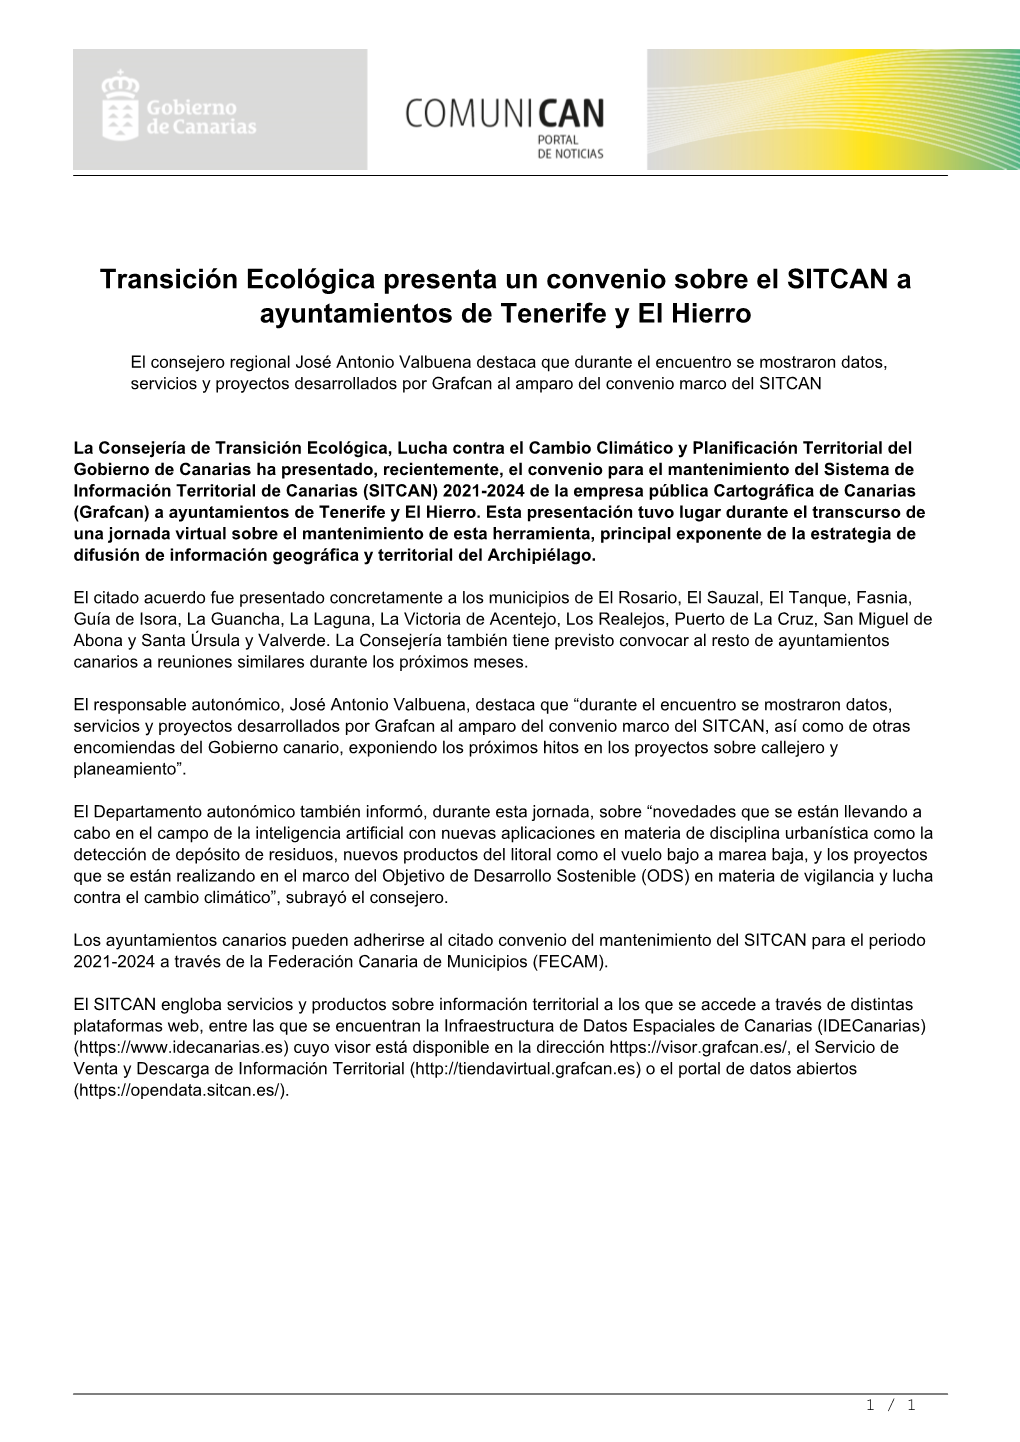 Transición Ecológica Presenta Un Convenio Sobre El SITCAN a Ayuntamientos De Tenerife Y El Hierro